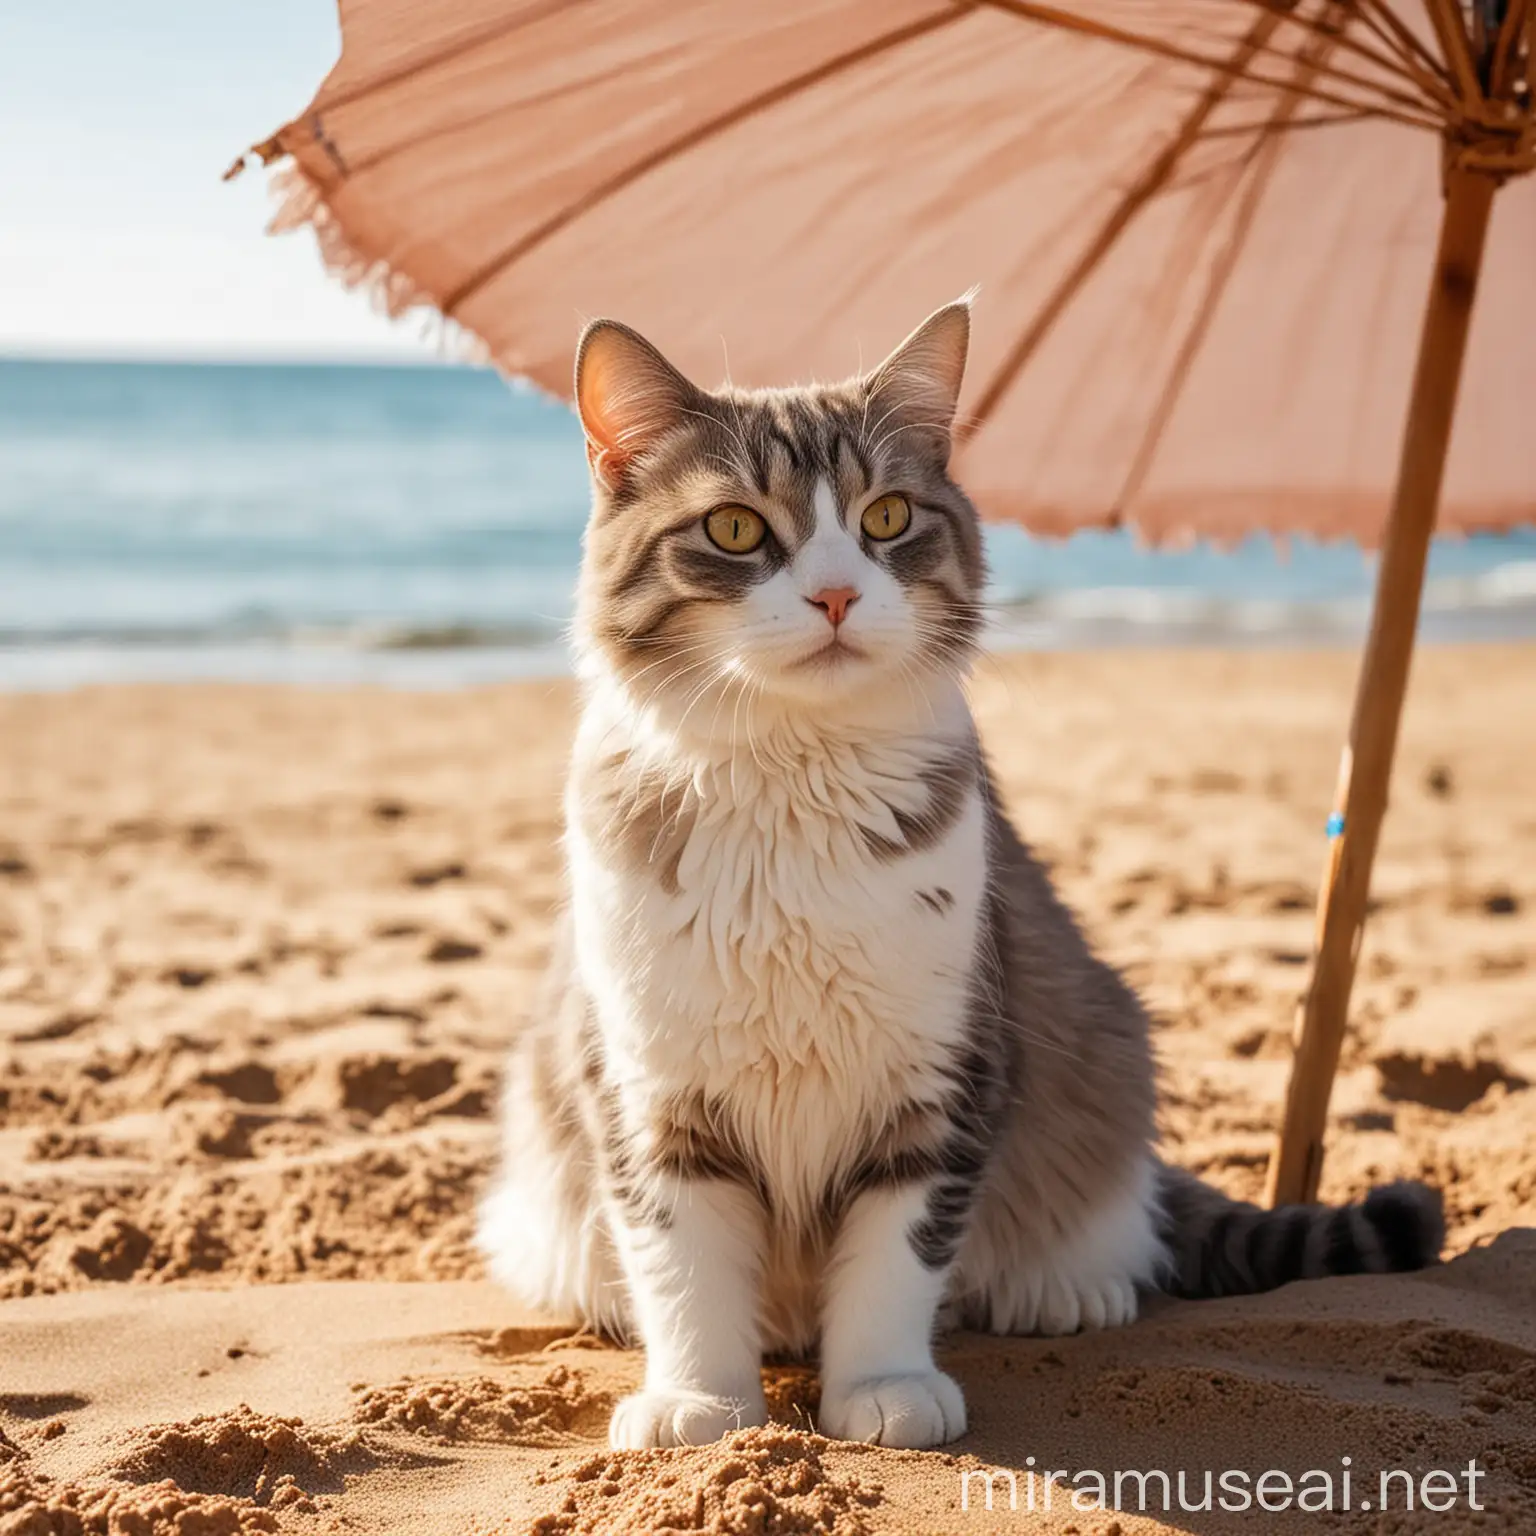 Красивая кошка сидит на пляже на песке под солнечным зонтиком